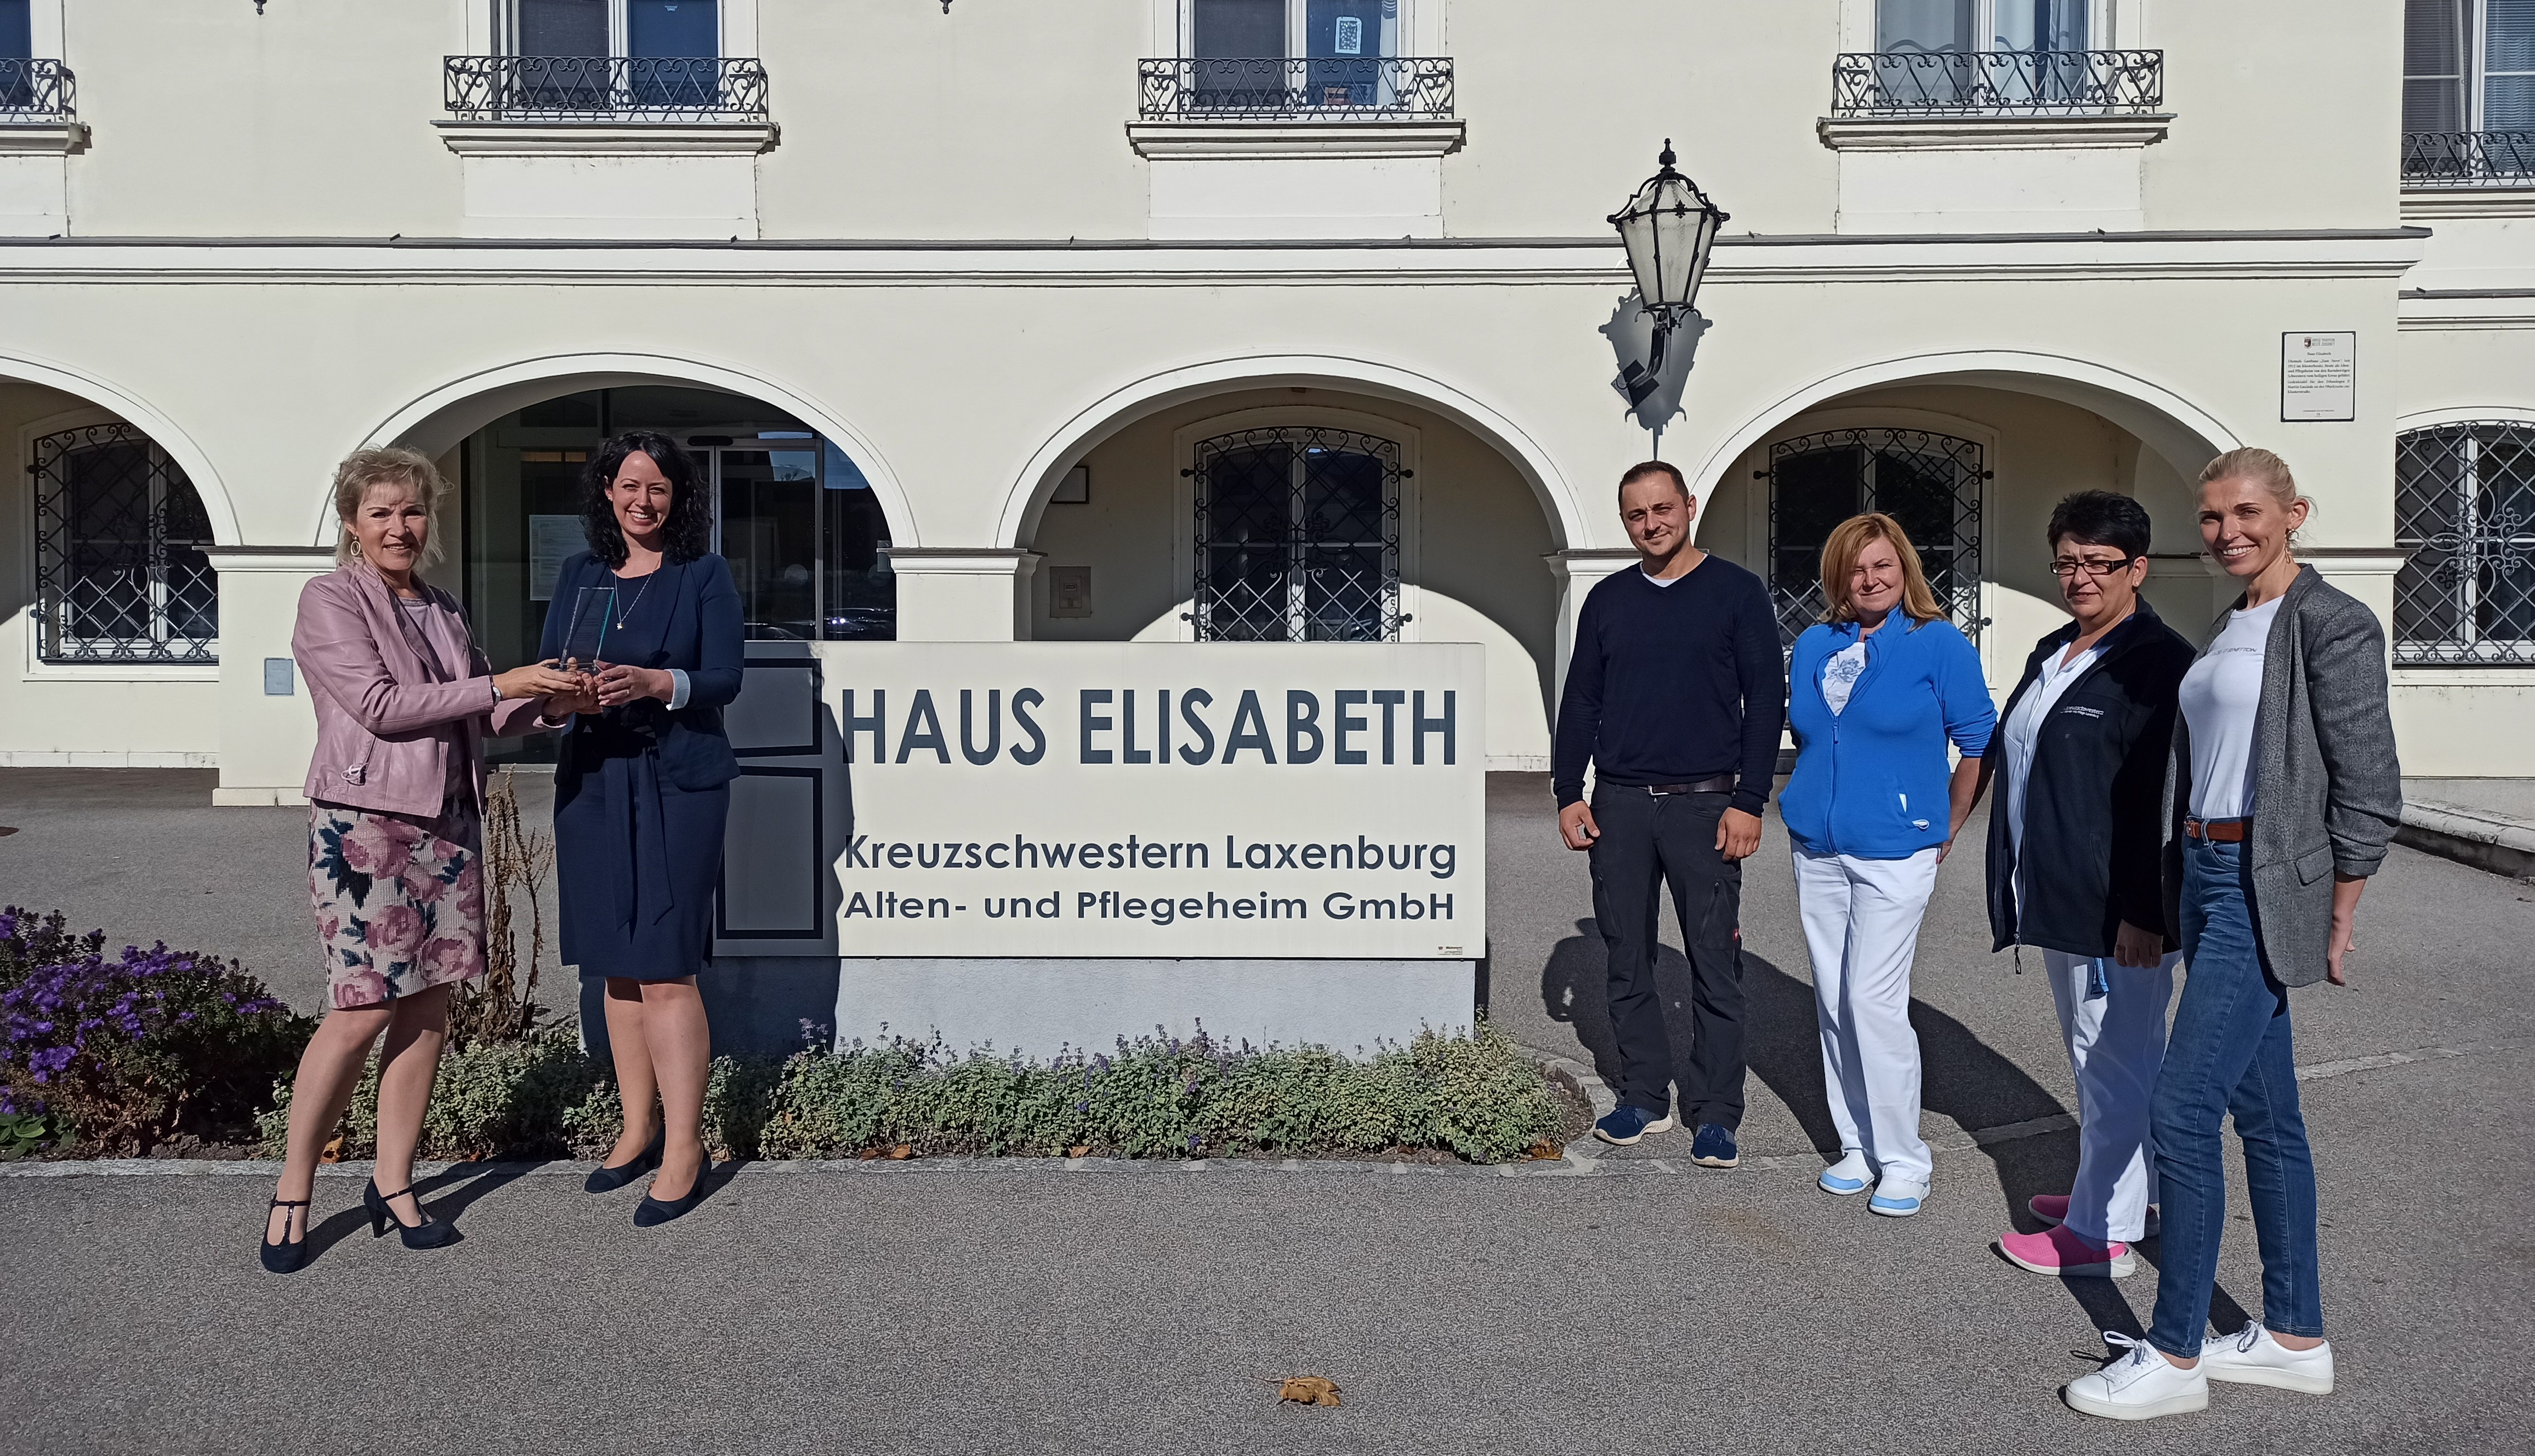 Kreuzschwestern Laxenburg Alten- und Pflegheim GmbH Haus Elisabeth